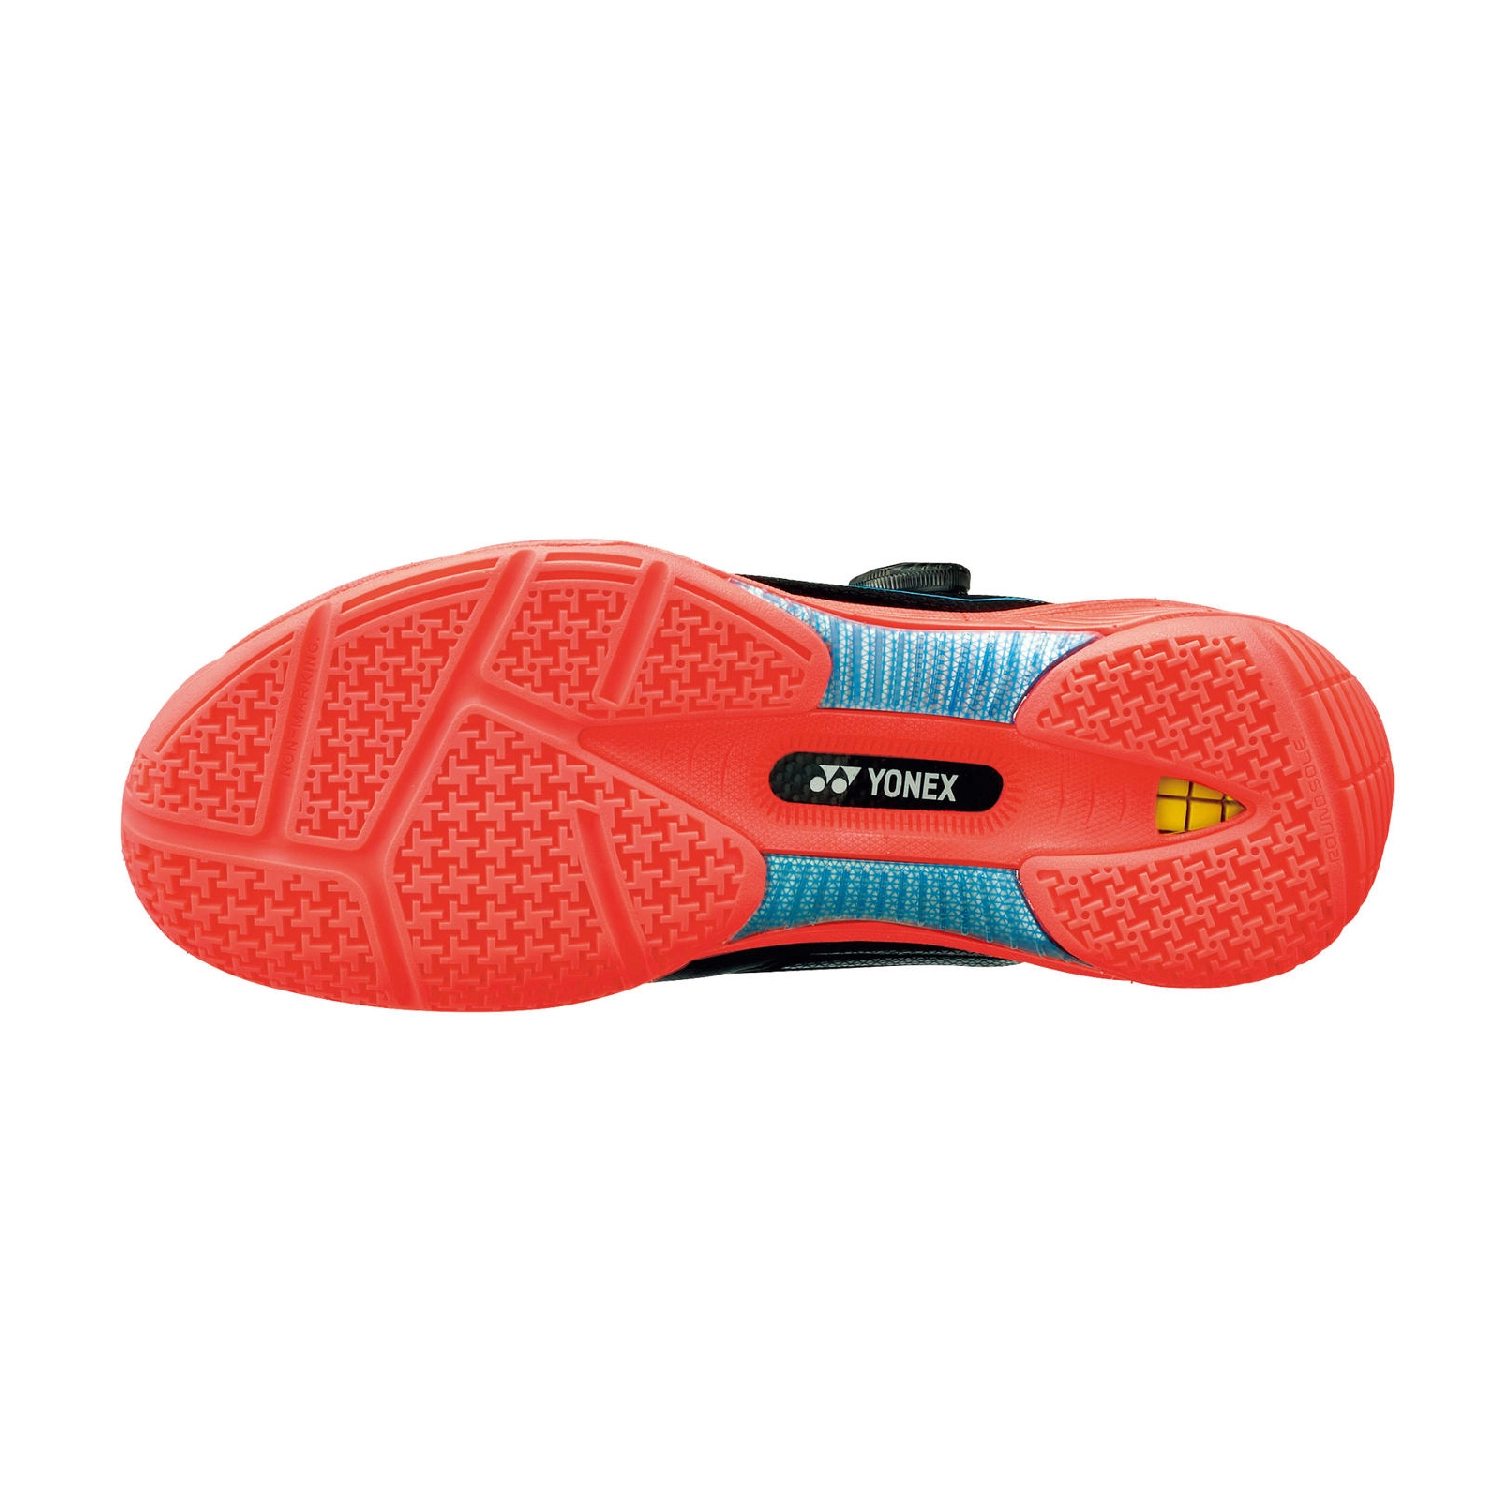 Giày cầu lông Yonex 88 Dial 2 Đen Đỏ chính hãng 2022